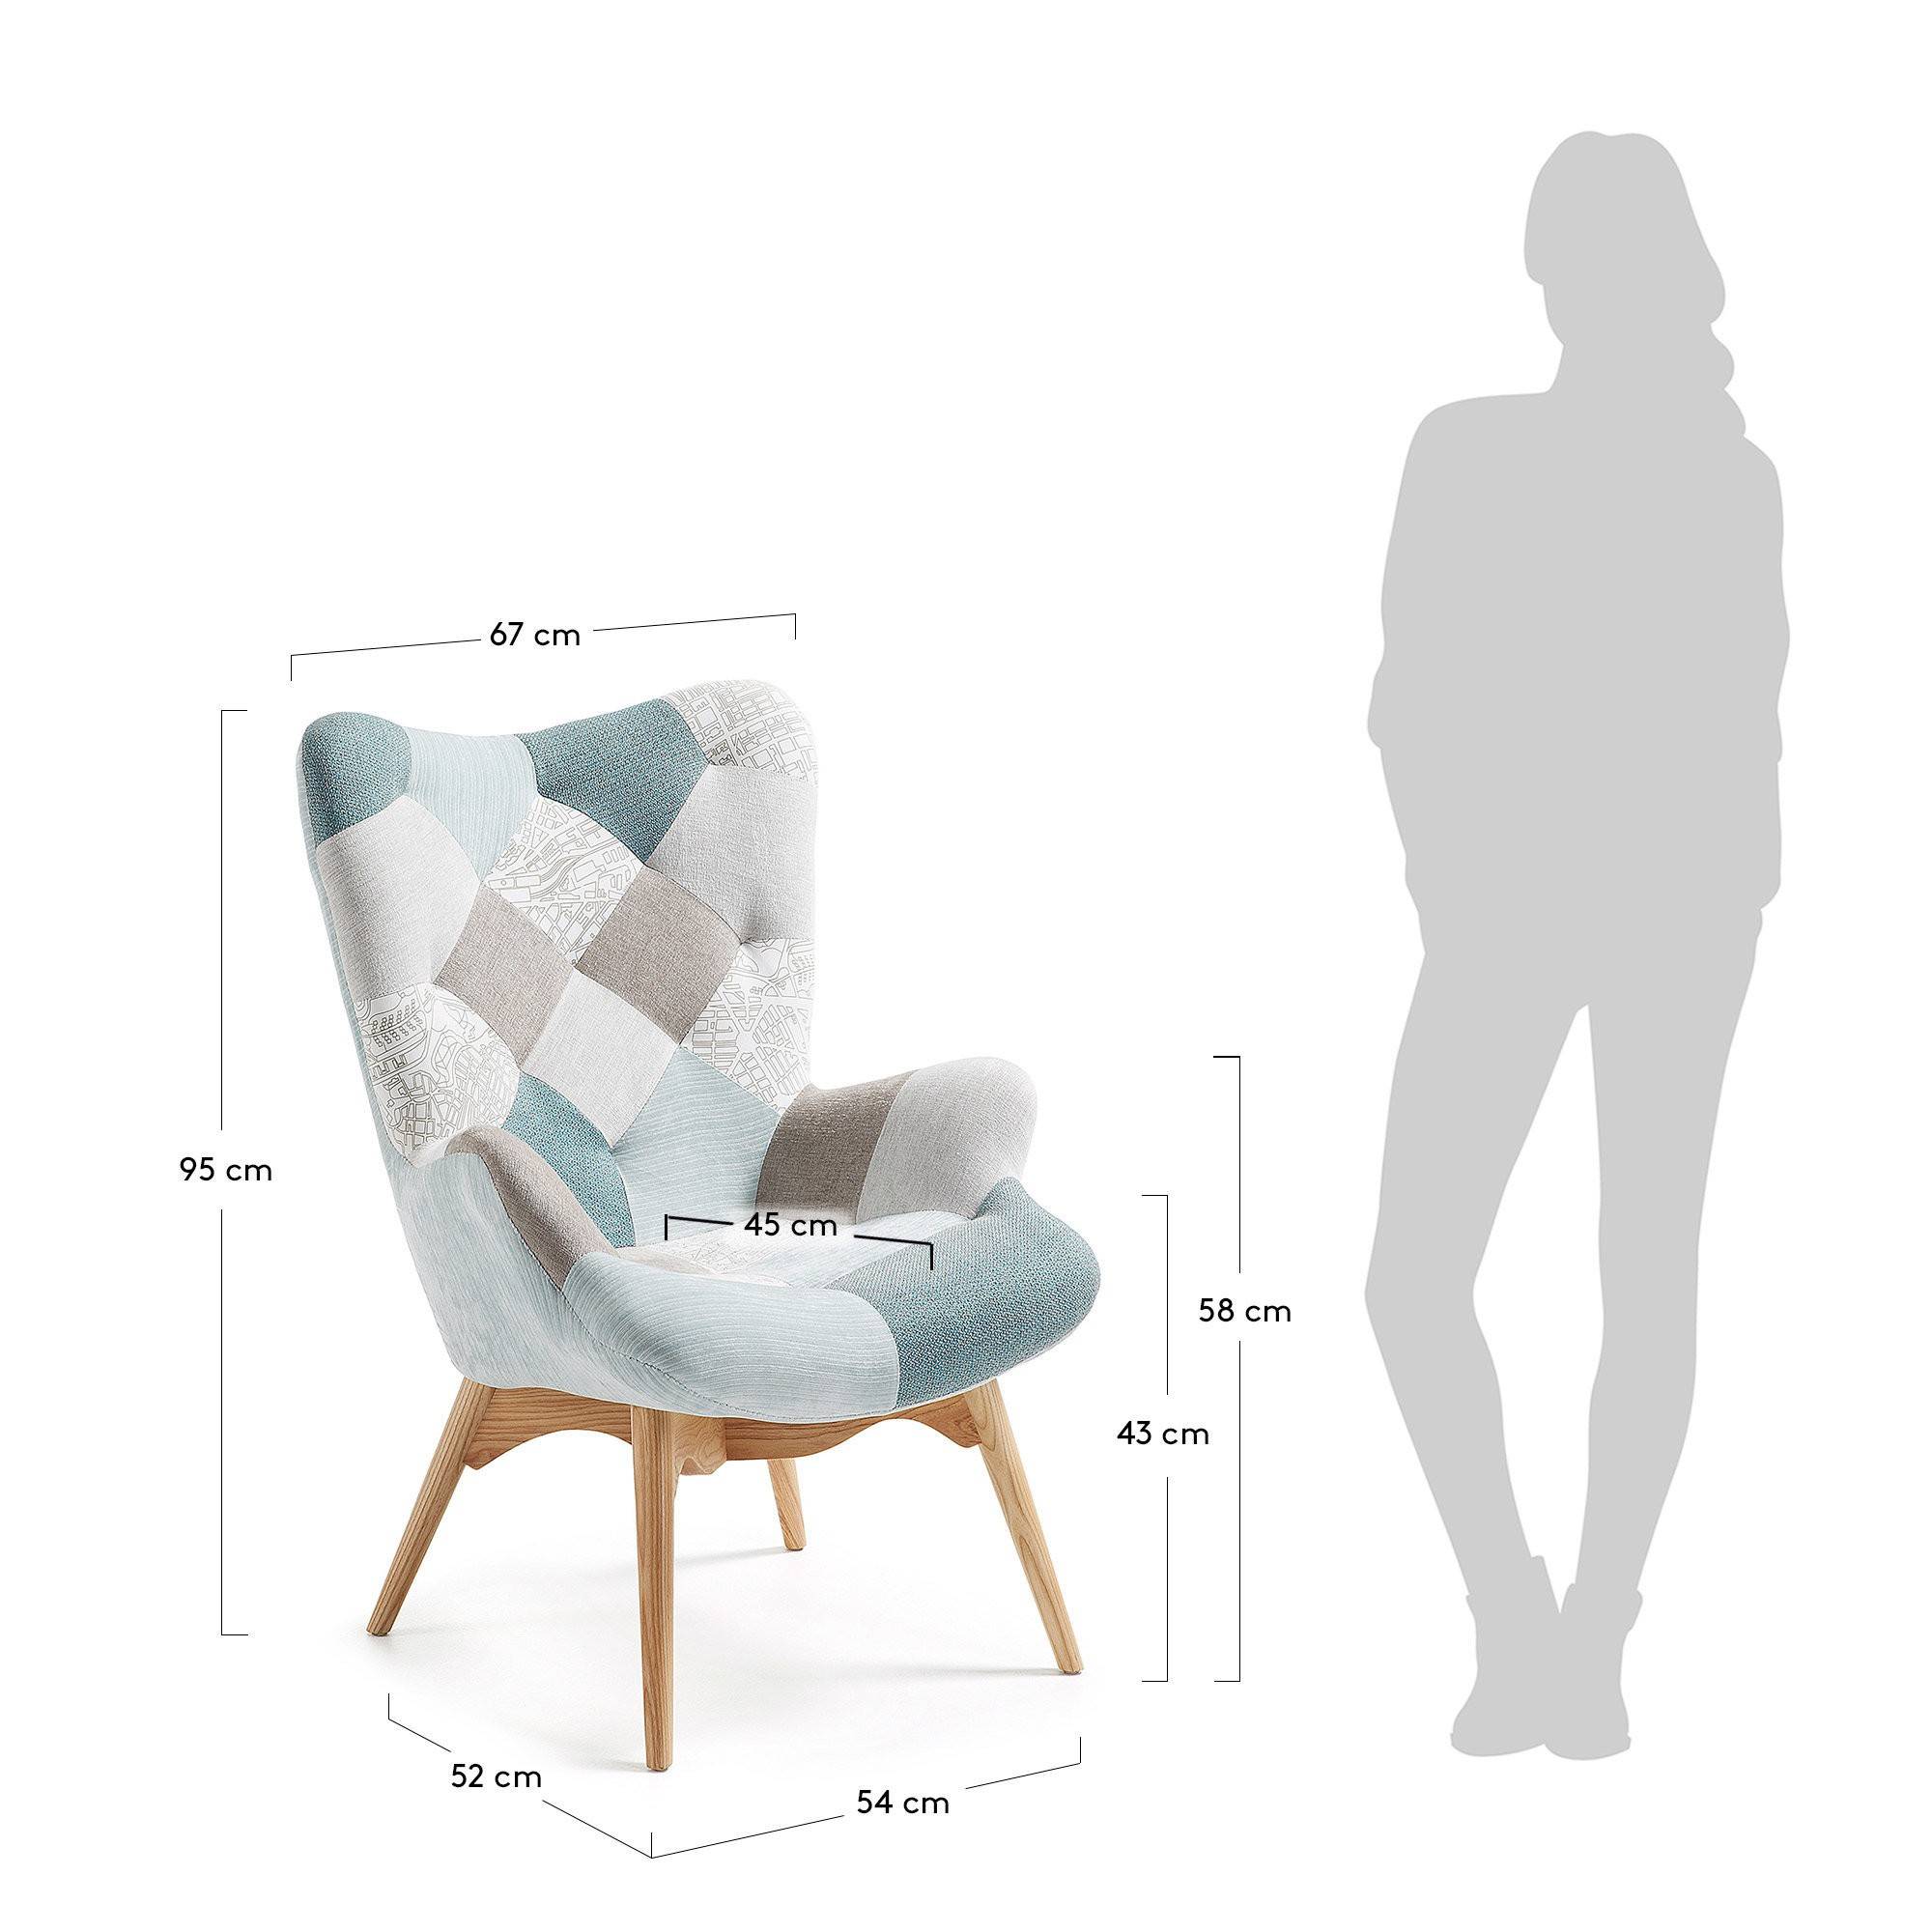 Кресла-кровати небольших размеров для маленьких комнат: угловое кресло для малогабаритной квартиры